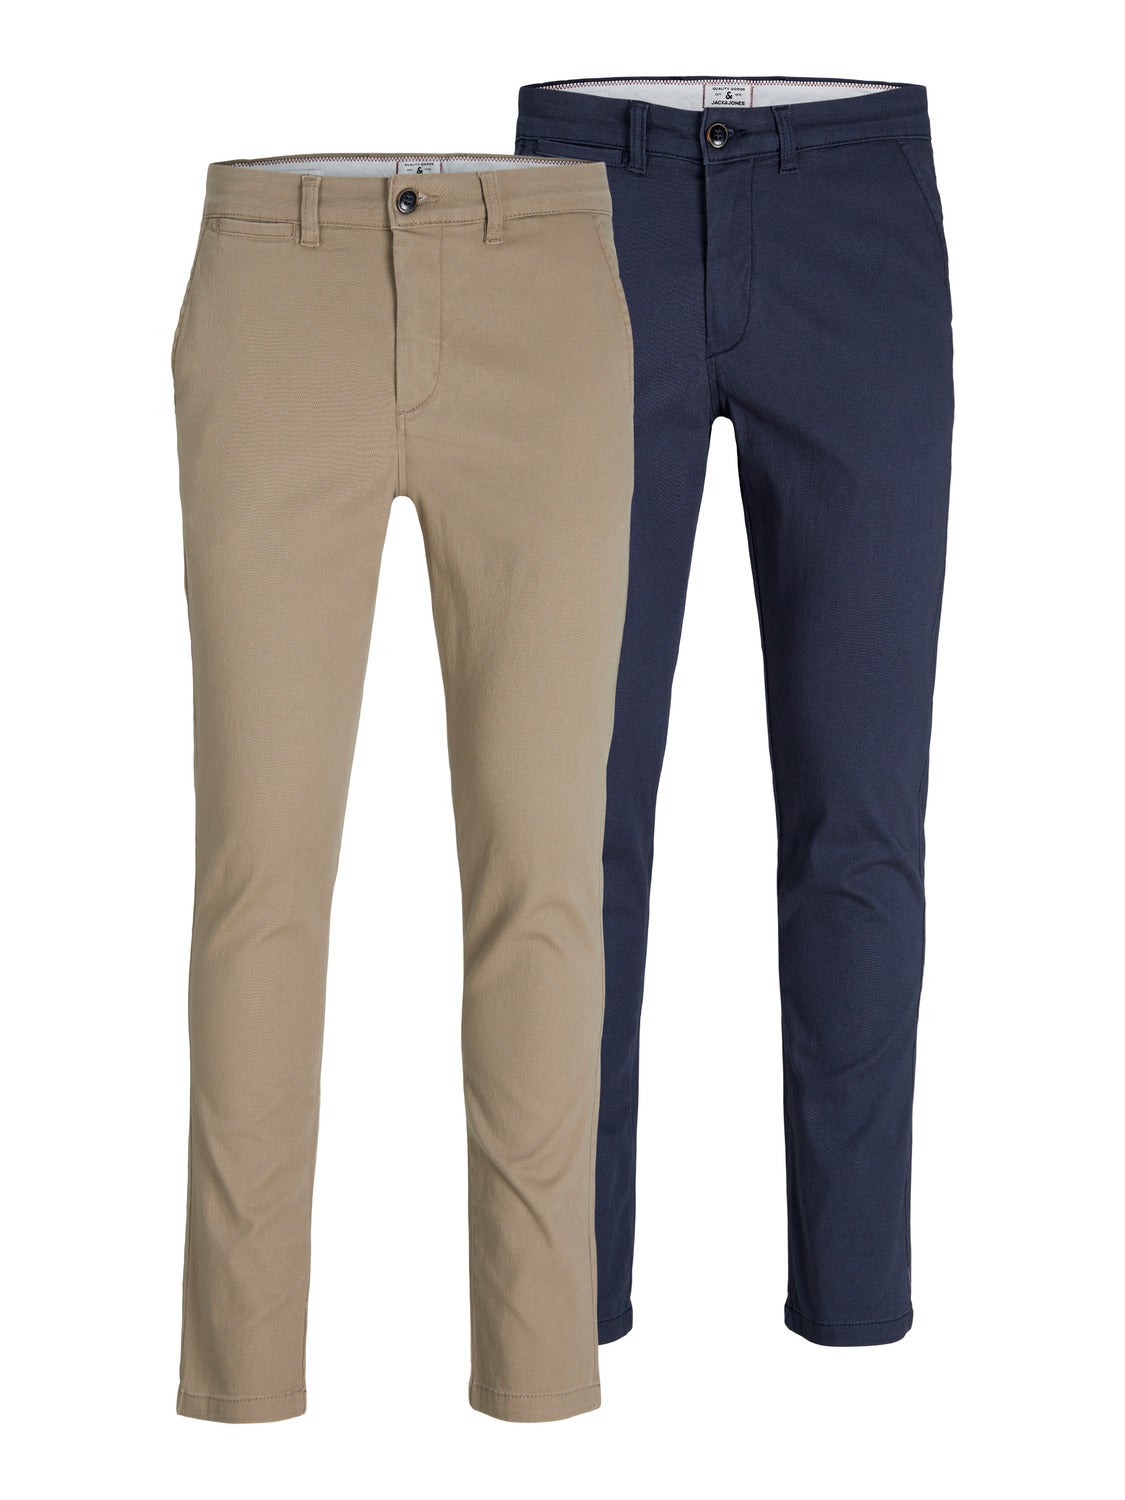 2-pack Slim Fit Chino trousers | Beige | Jack & Jones®